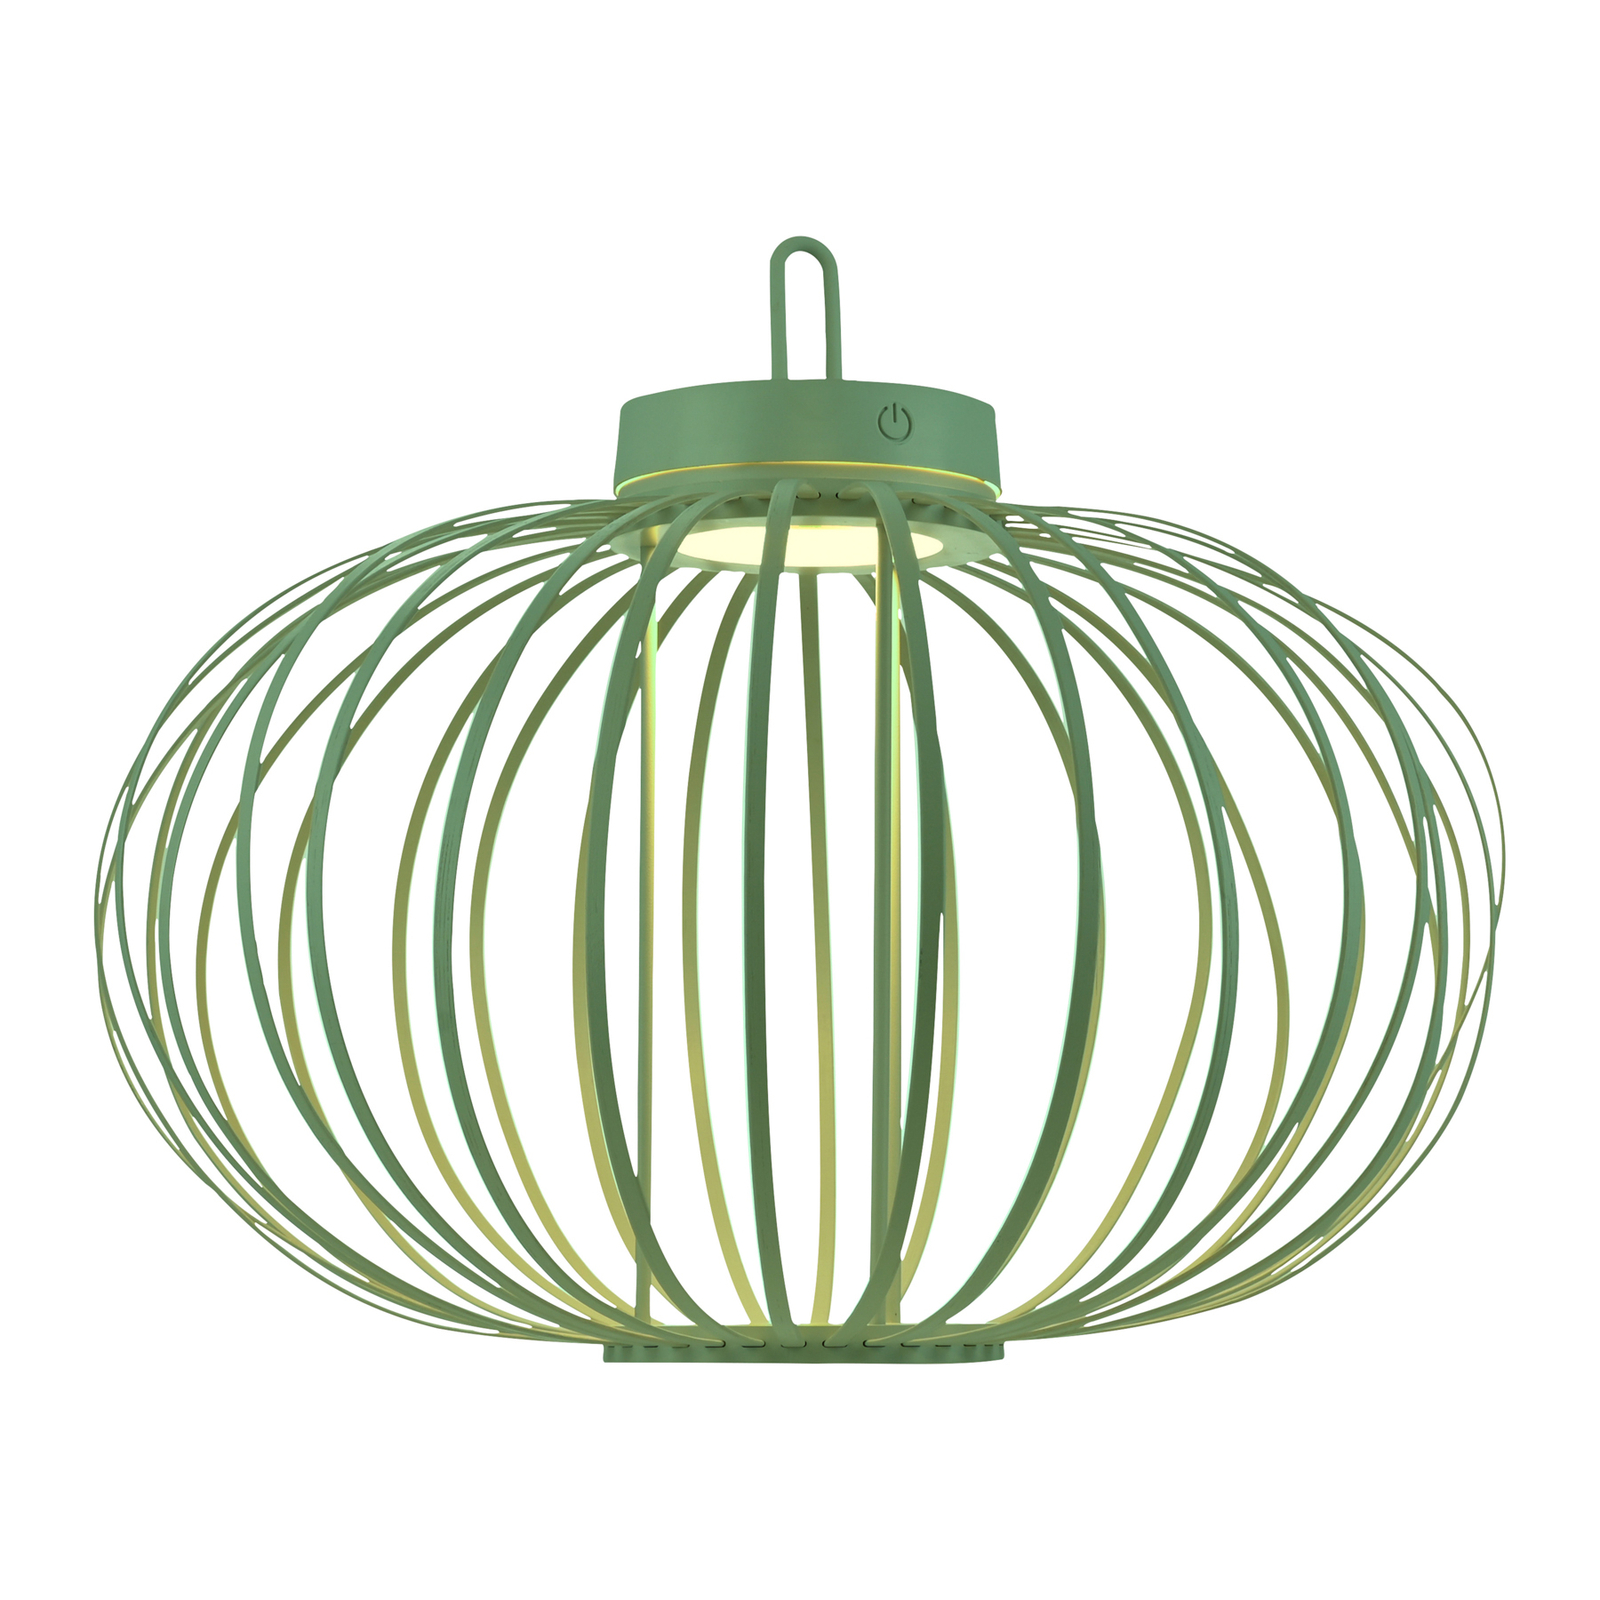 JUST LIGHT. Akuba LED-bordlampe, grøn, 37 cm, bambus